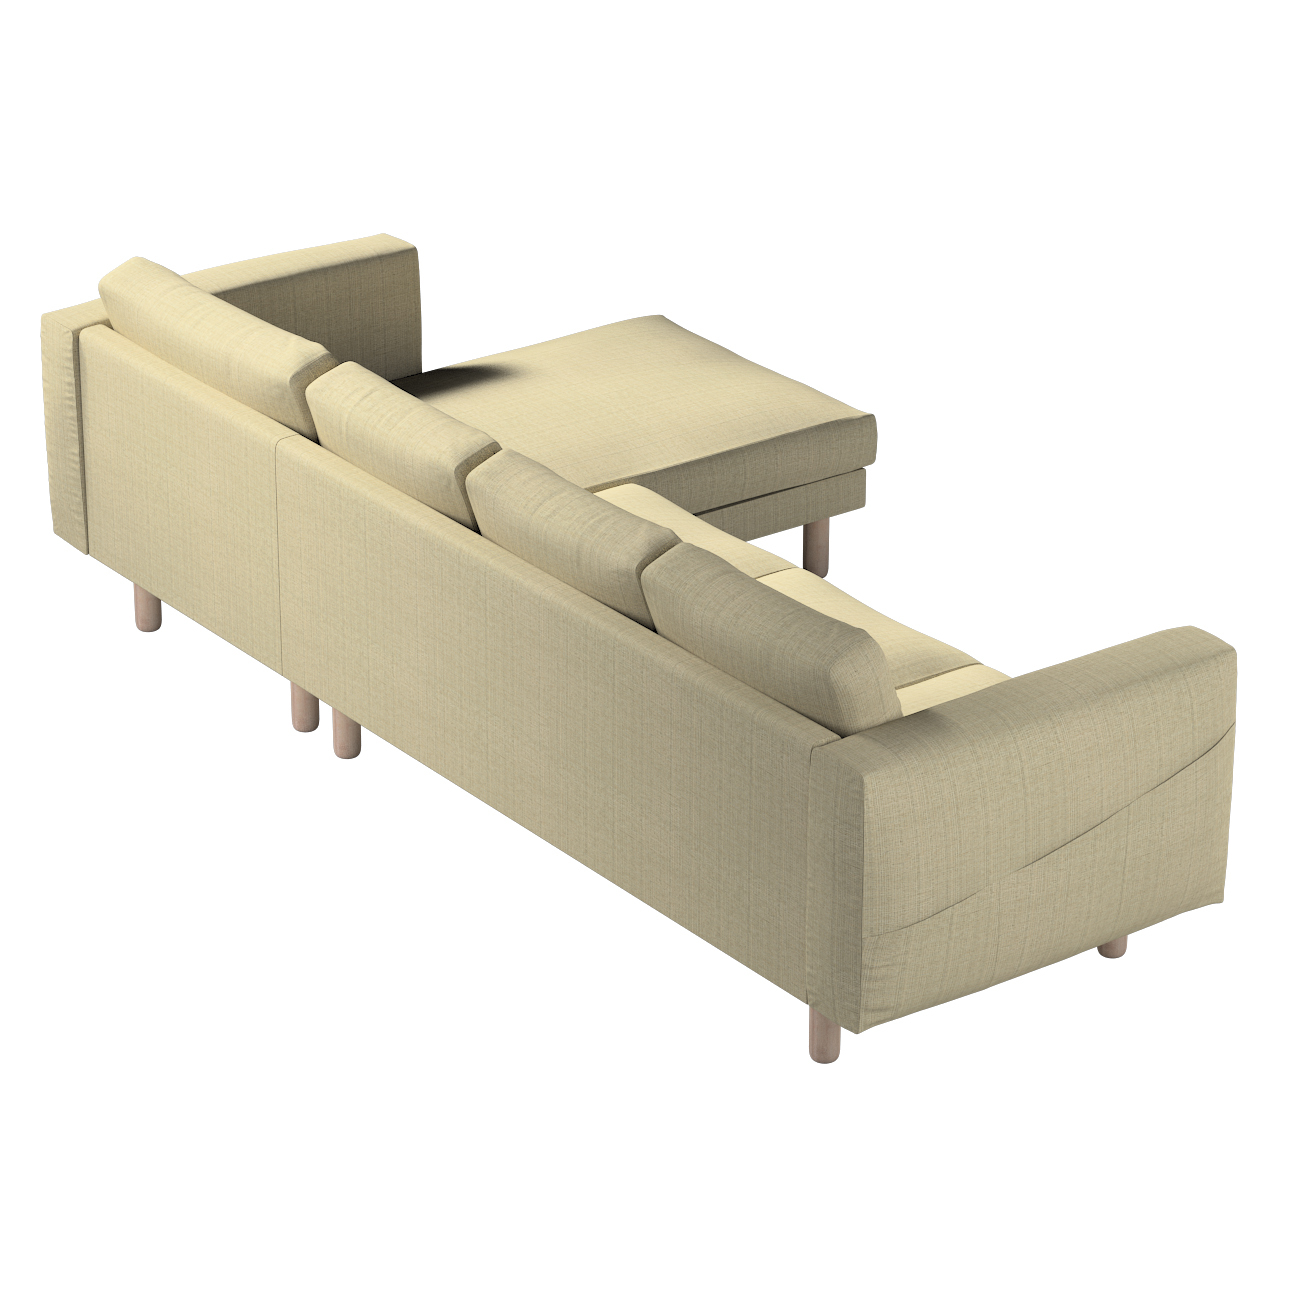 Bezug für Norsborg 4-Sitzer Sofa mit Recamiere, beige-creme, Norsborg Bezug günstig online kaufen